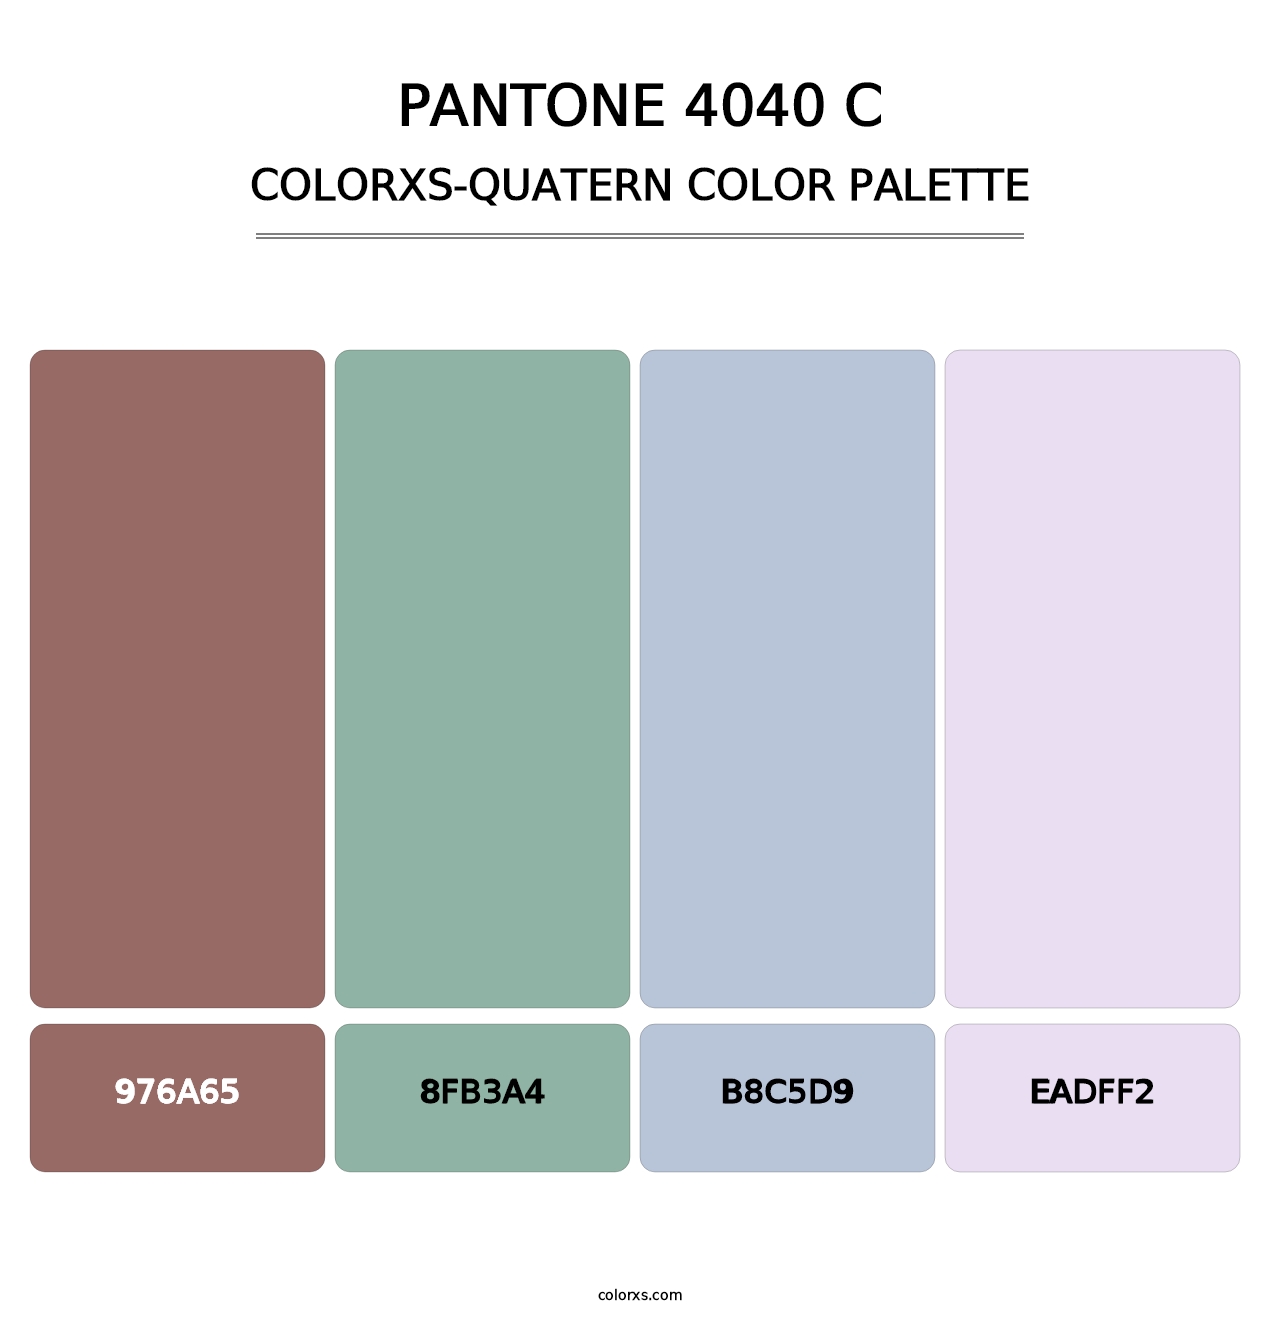 PANTONE 4040 C - Colorxs Quatern Palette